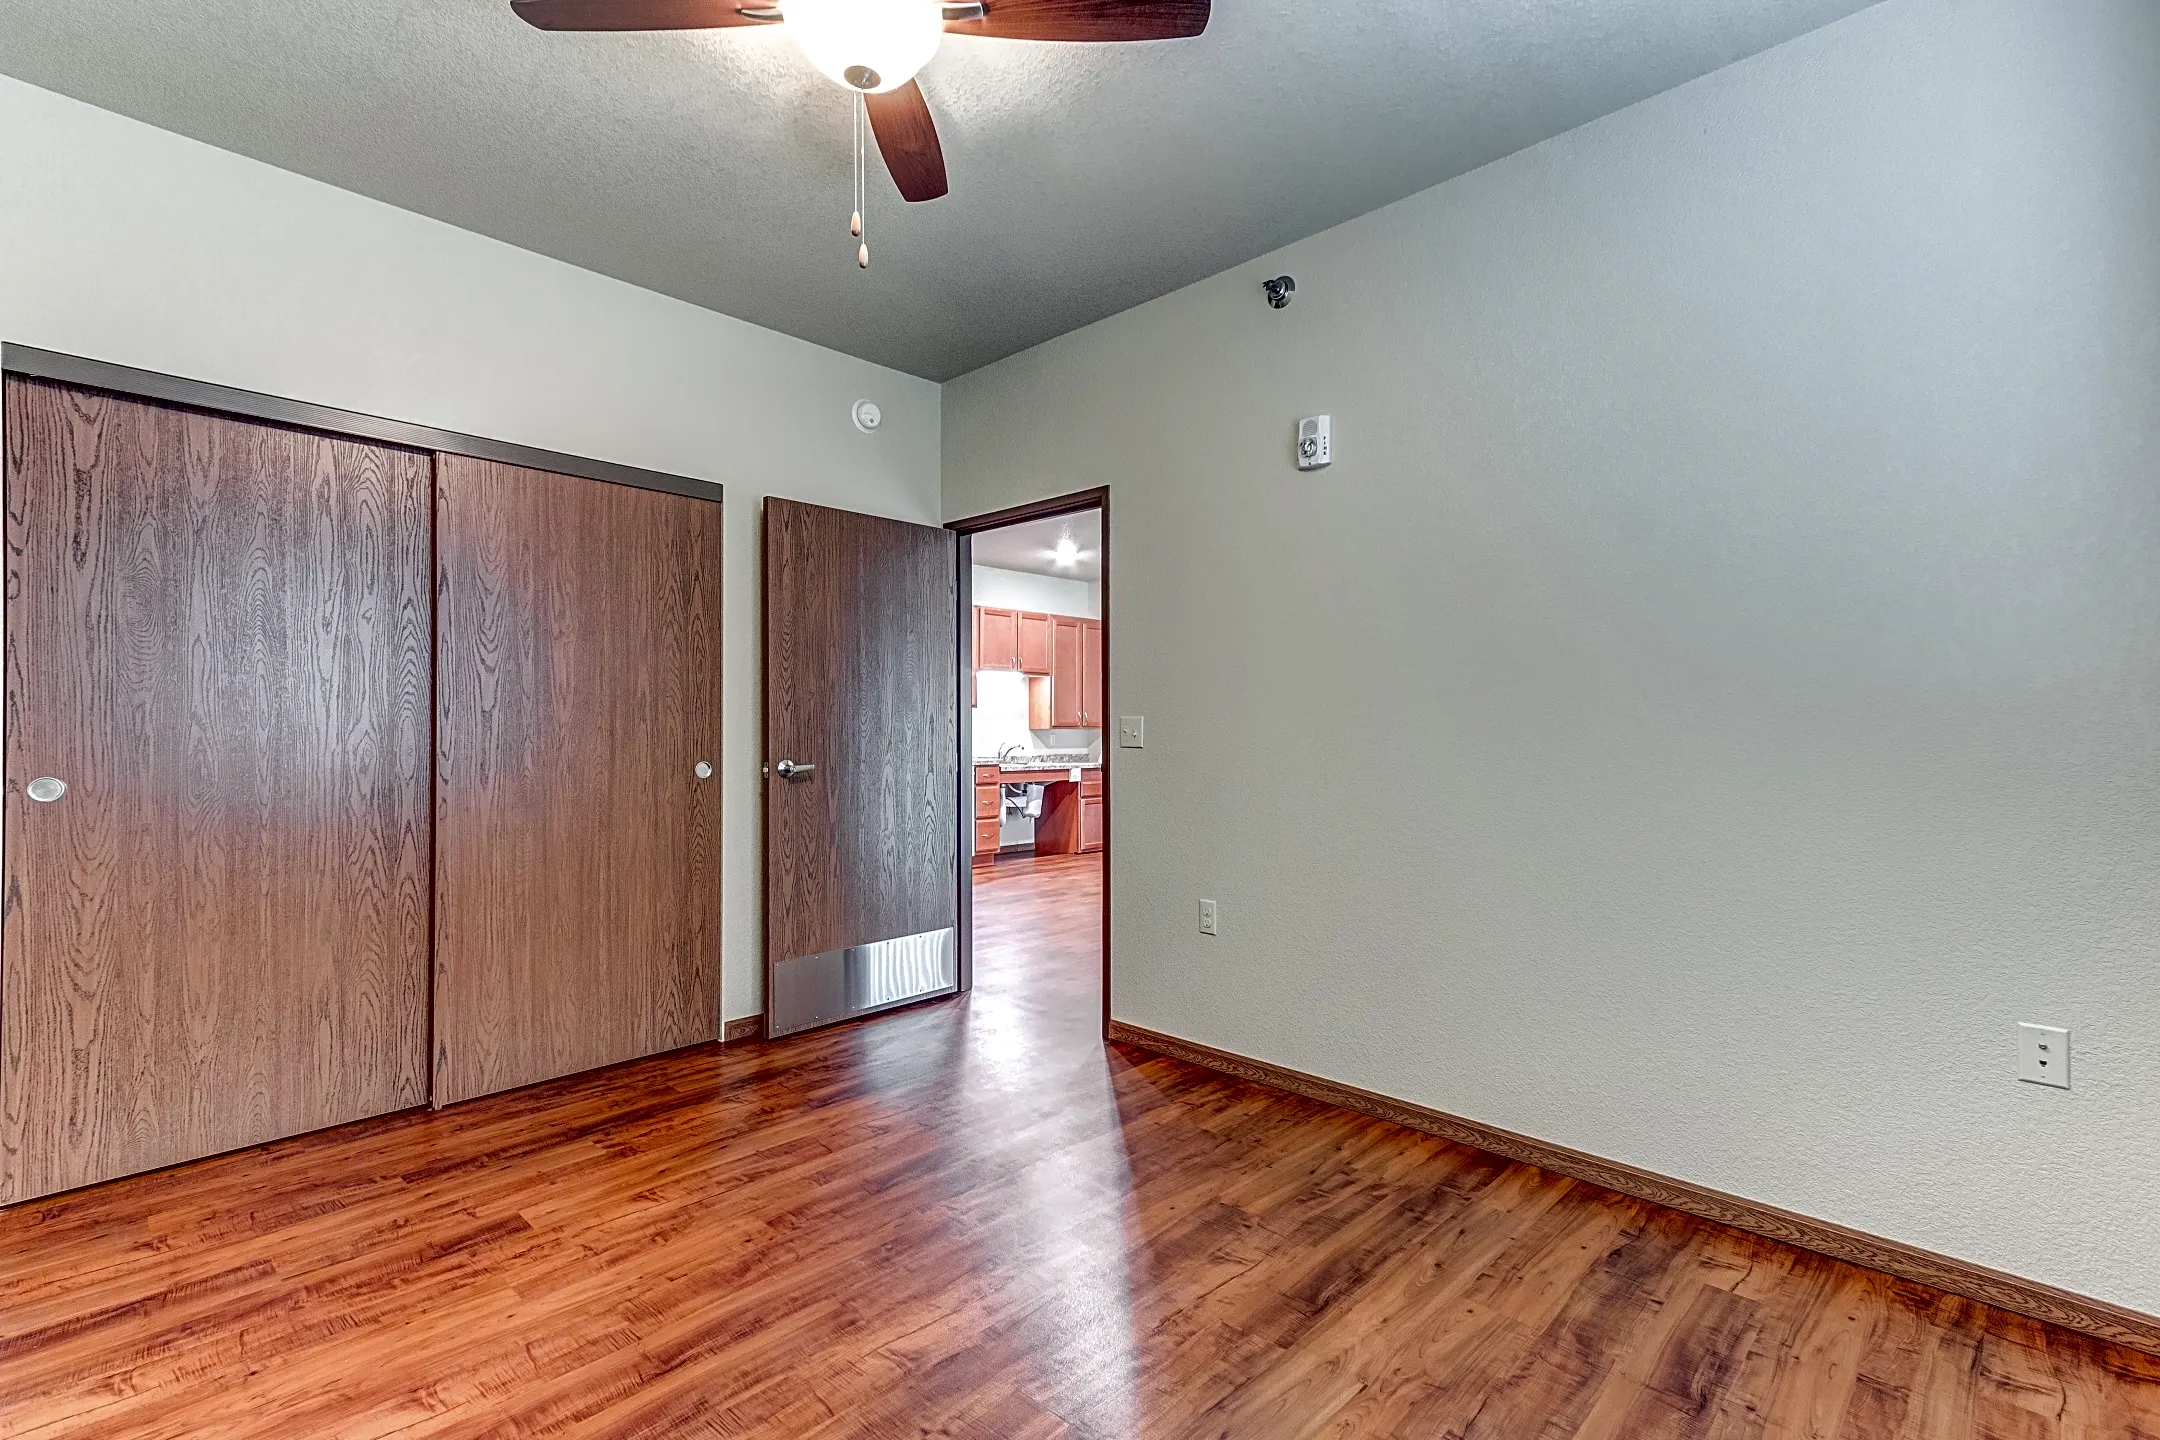 Bedroom - Homefield Senior Living Apartments - Fargo, ND